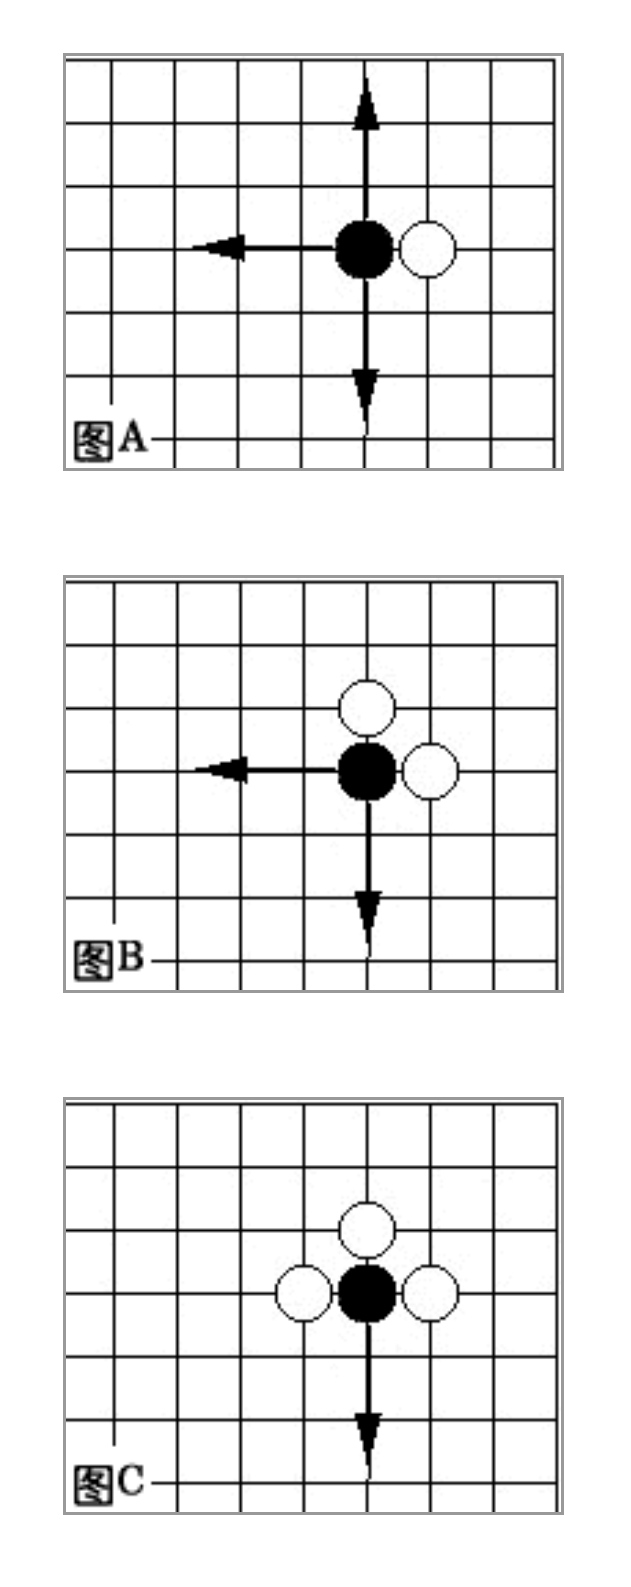 围棋规则新手图解：基础知识-6.jpg